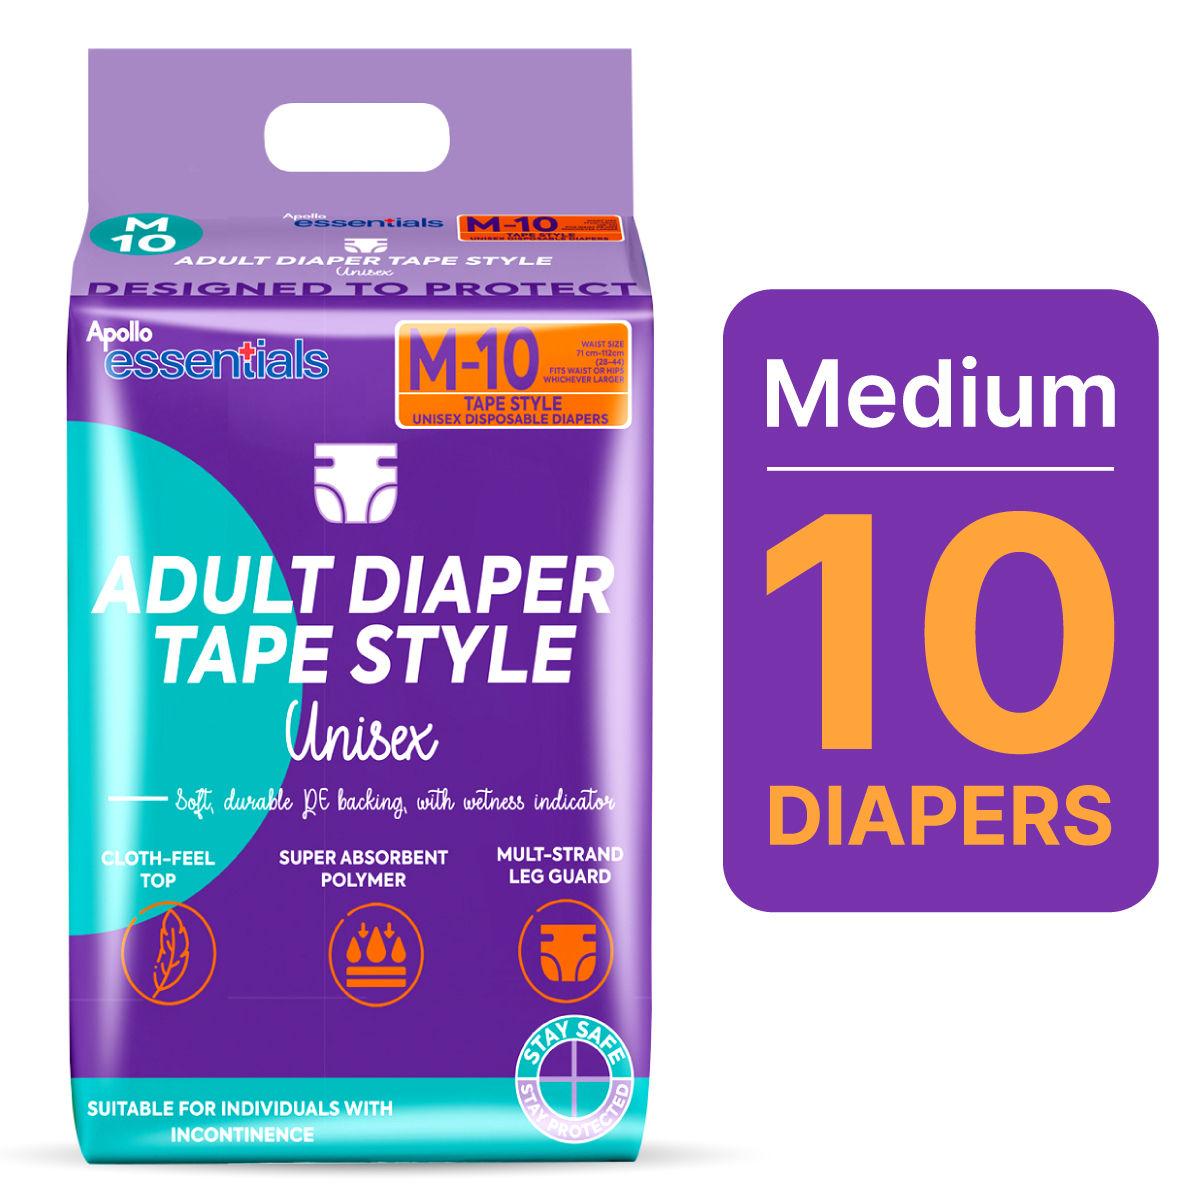 Apollo Essentials Adult Diaper Tape Unisex Medium, 10 Count, Pack of 1 